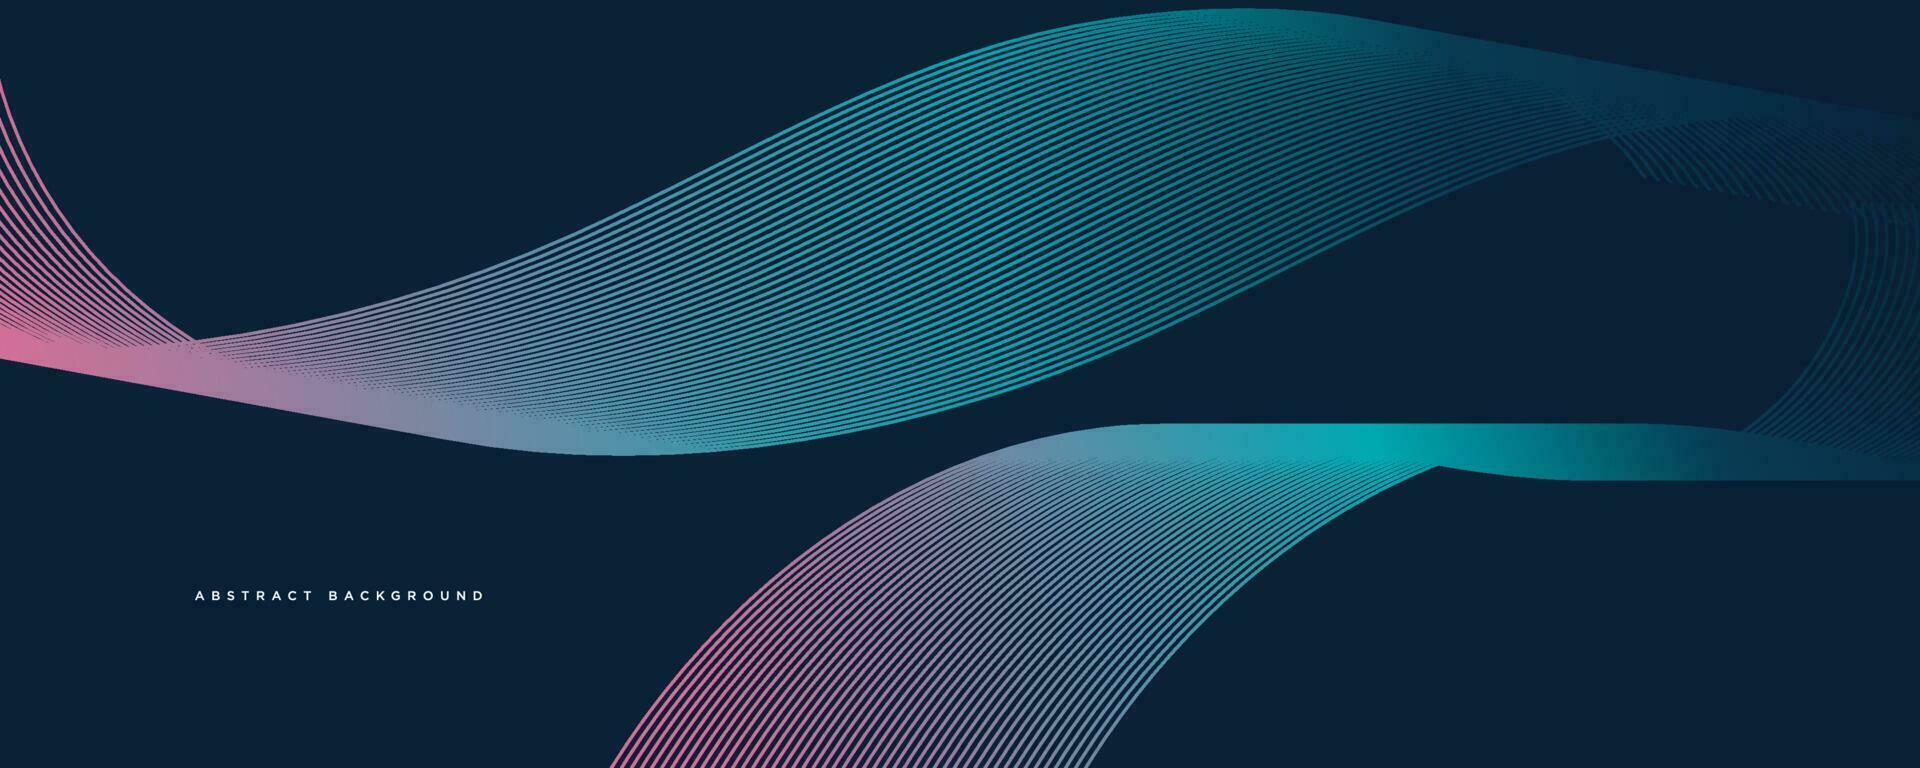 mörk abstrakt bakgrund med lysande vågor. skinande rör på sig linje design element. modern blå lila lutning strömmande Vinka linje. trogen teknologi begrepp. vektor illustration